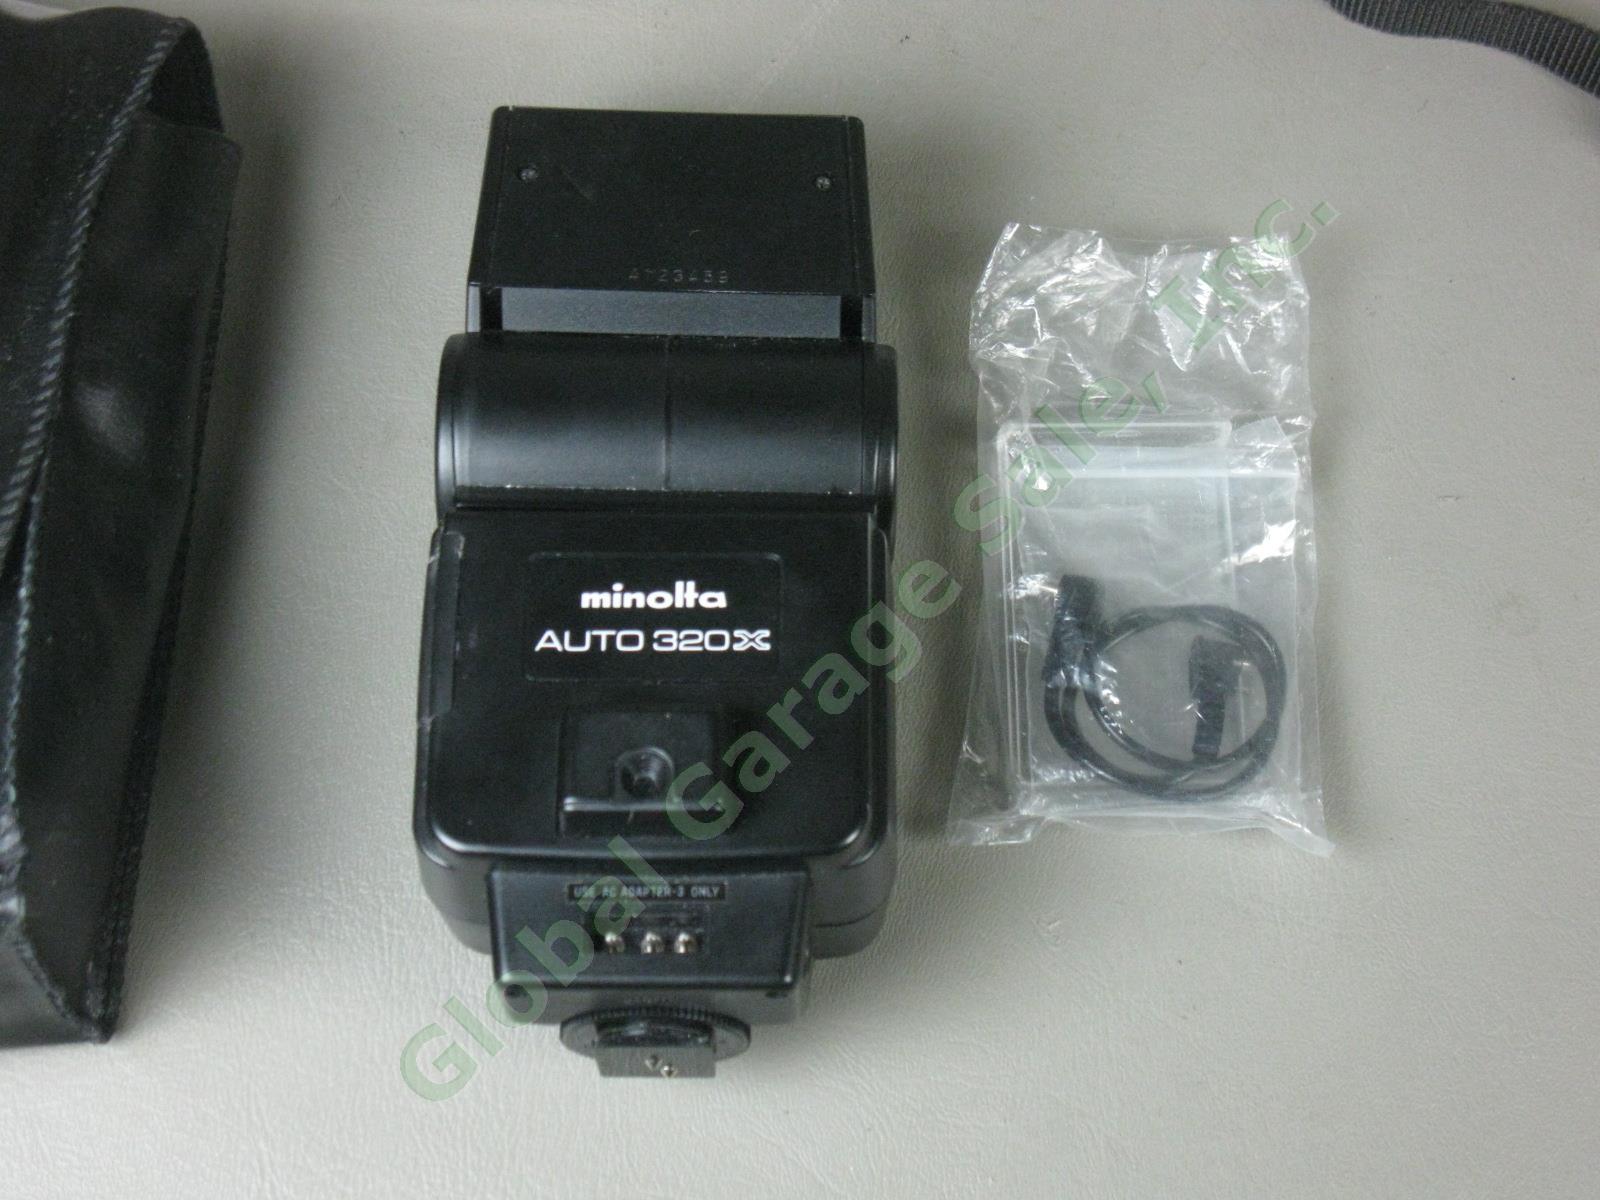 Minolta XD-11 SLR Camera MD 28-85mm 1:3.5-4.5 Zoom Lens Auto 320X Flash +Manuals 9